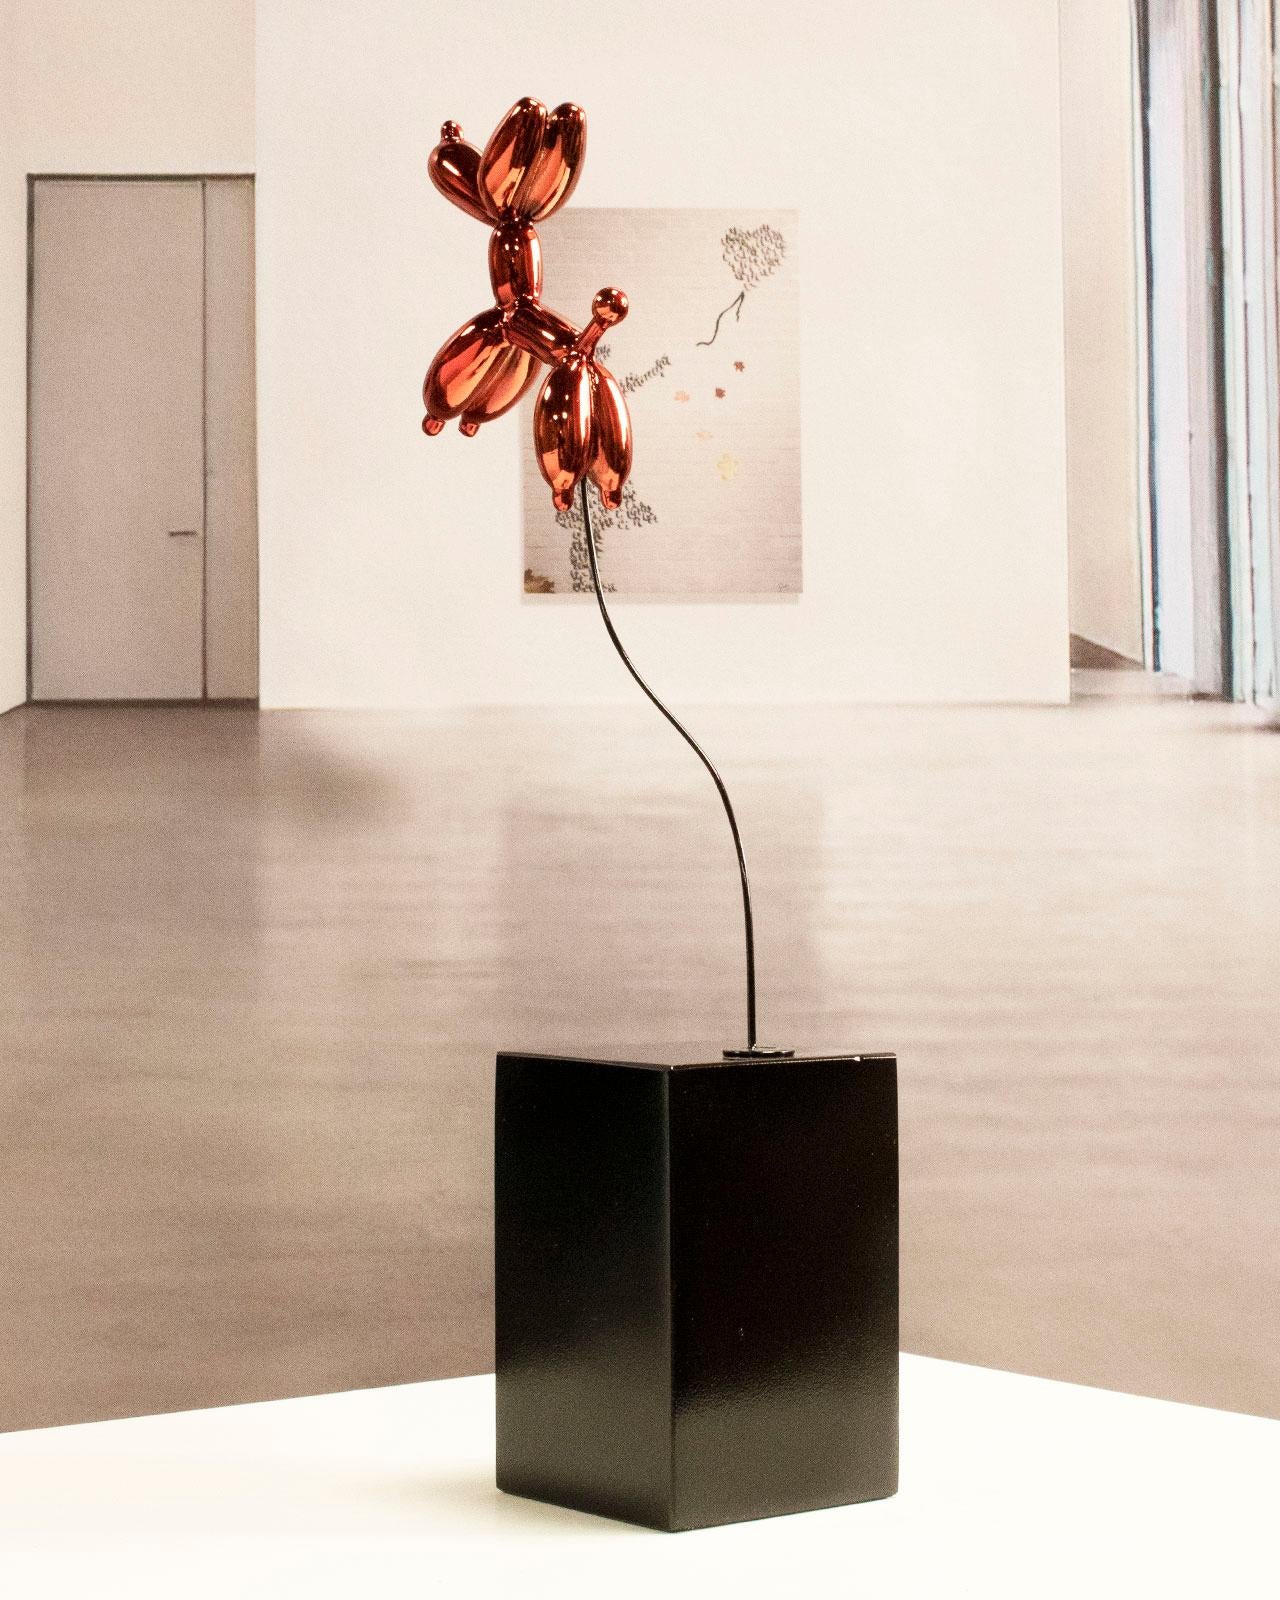 Weightless balloon dog red - Miguel Guía, Pop Art Nickel layer Sculpture 5